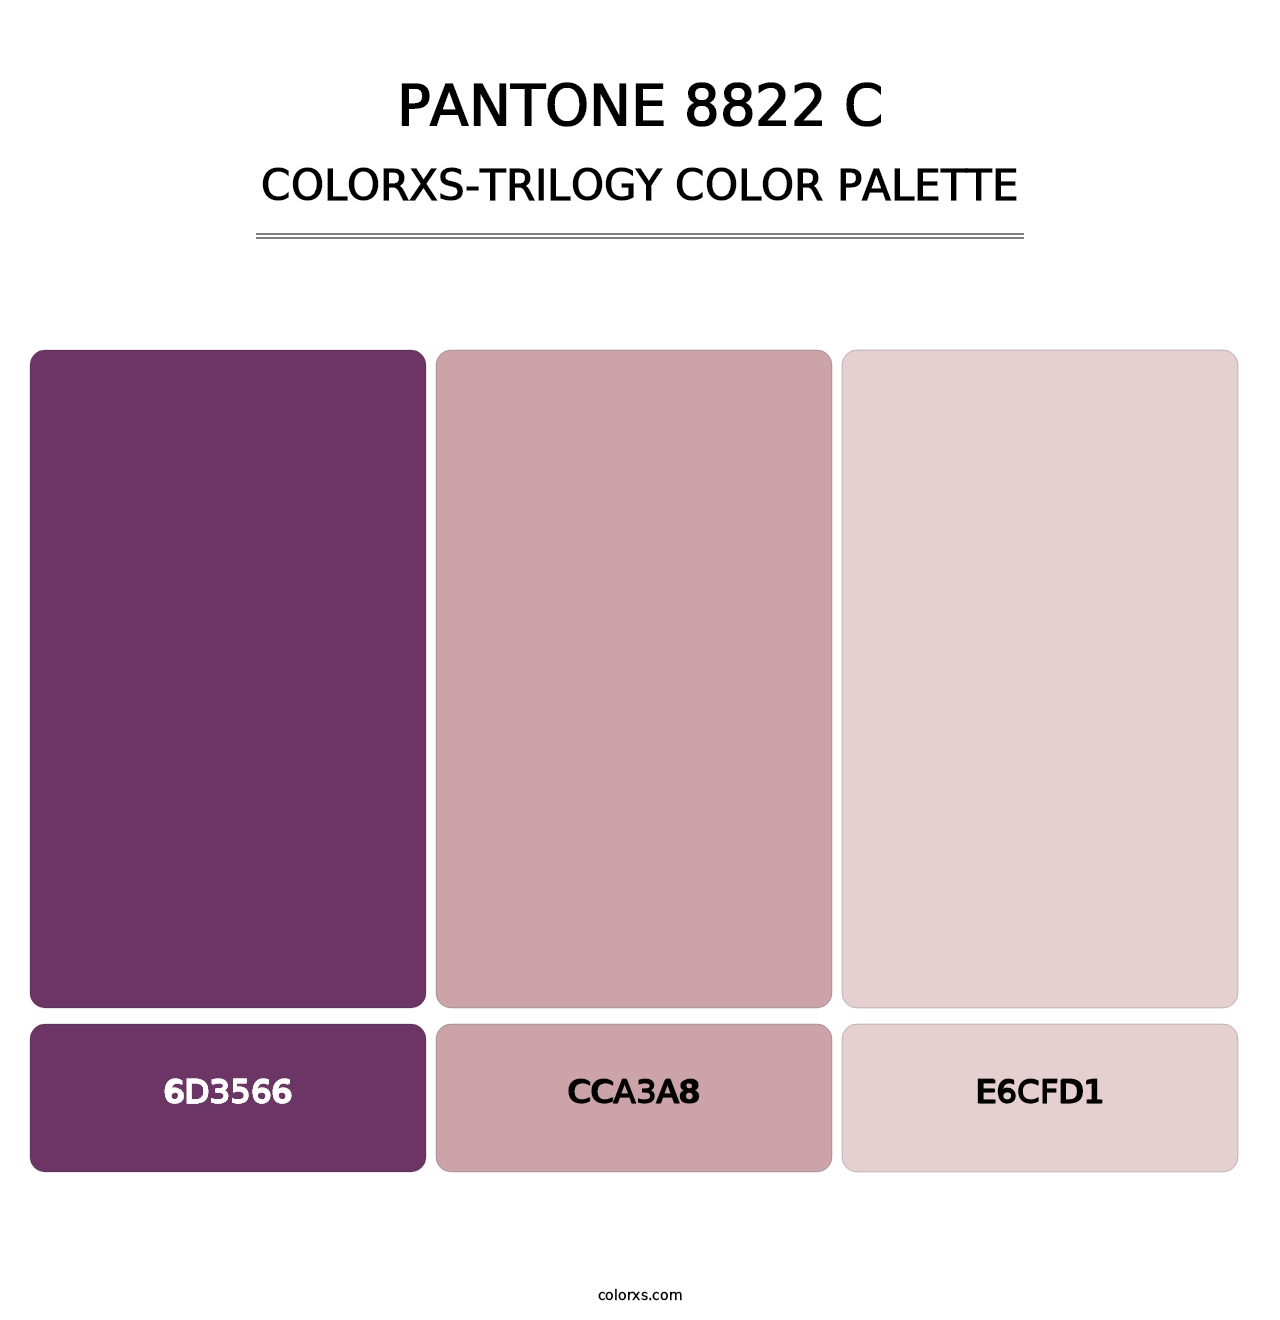 PANTONE 8822 C - Colorxs Trilogy Palette